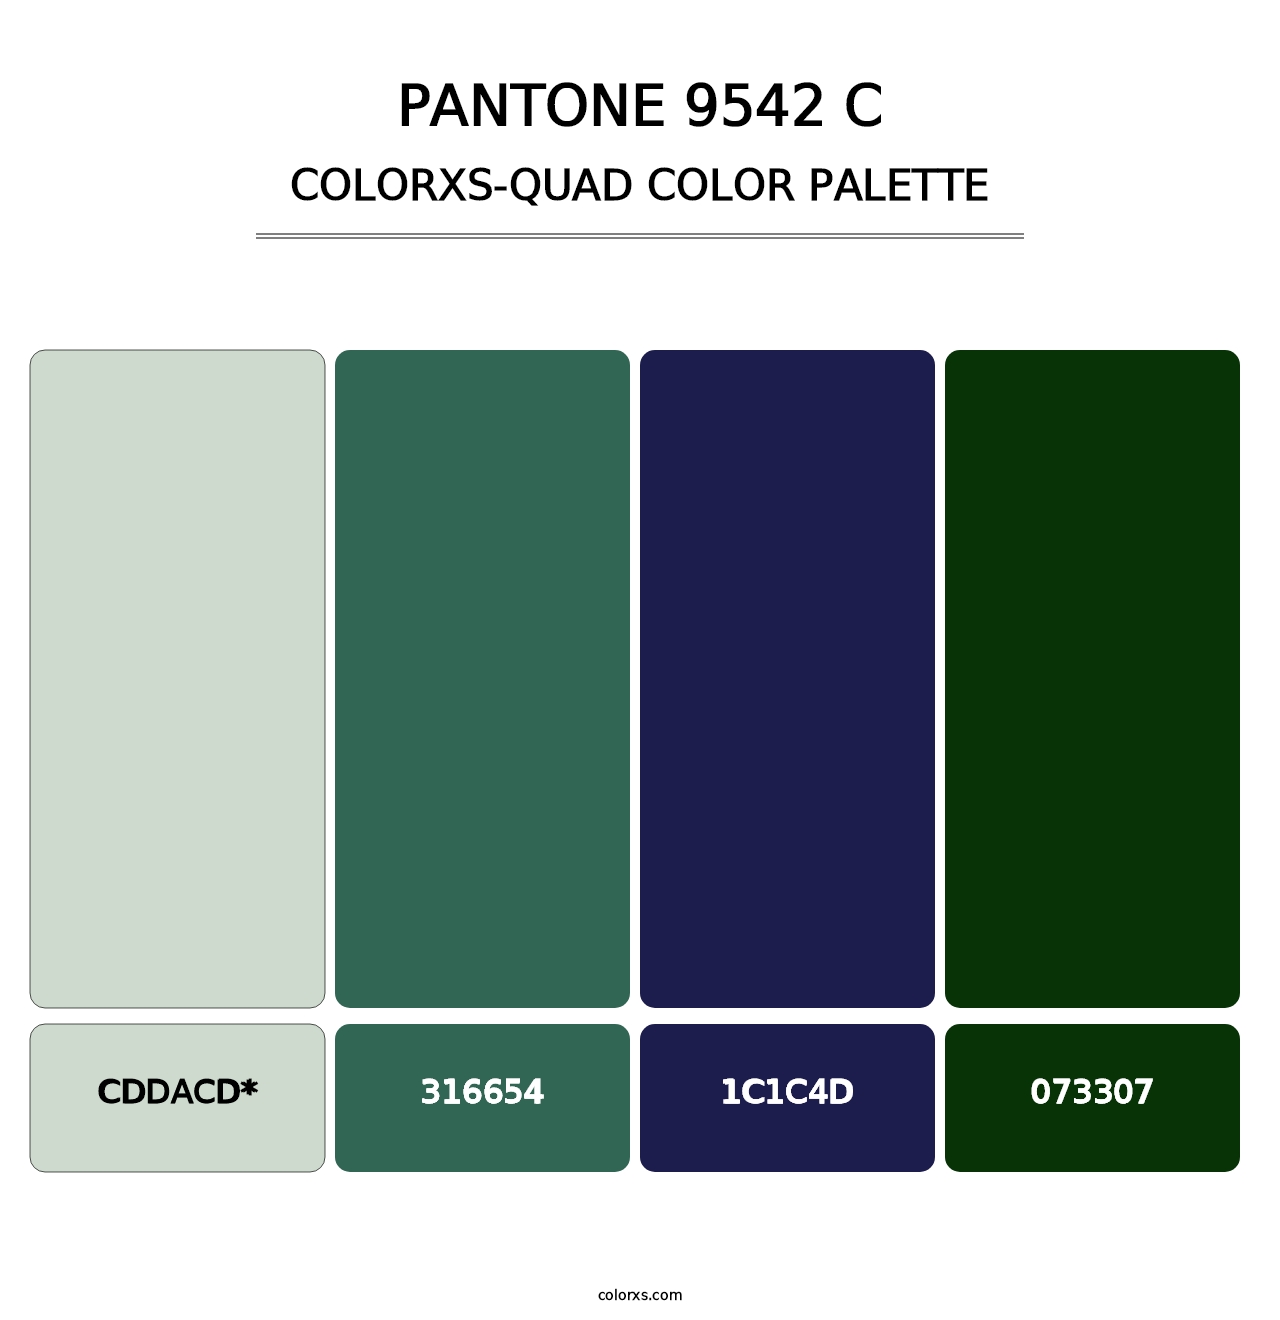 PANTONE 9542 C - Colorxs Quad Palette